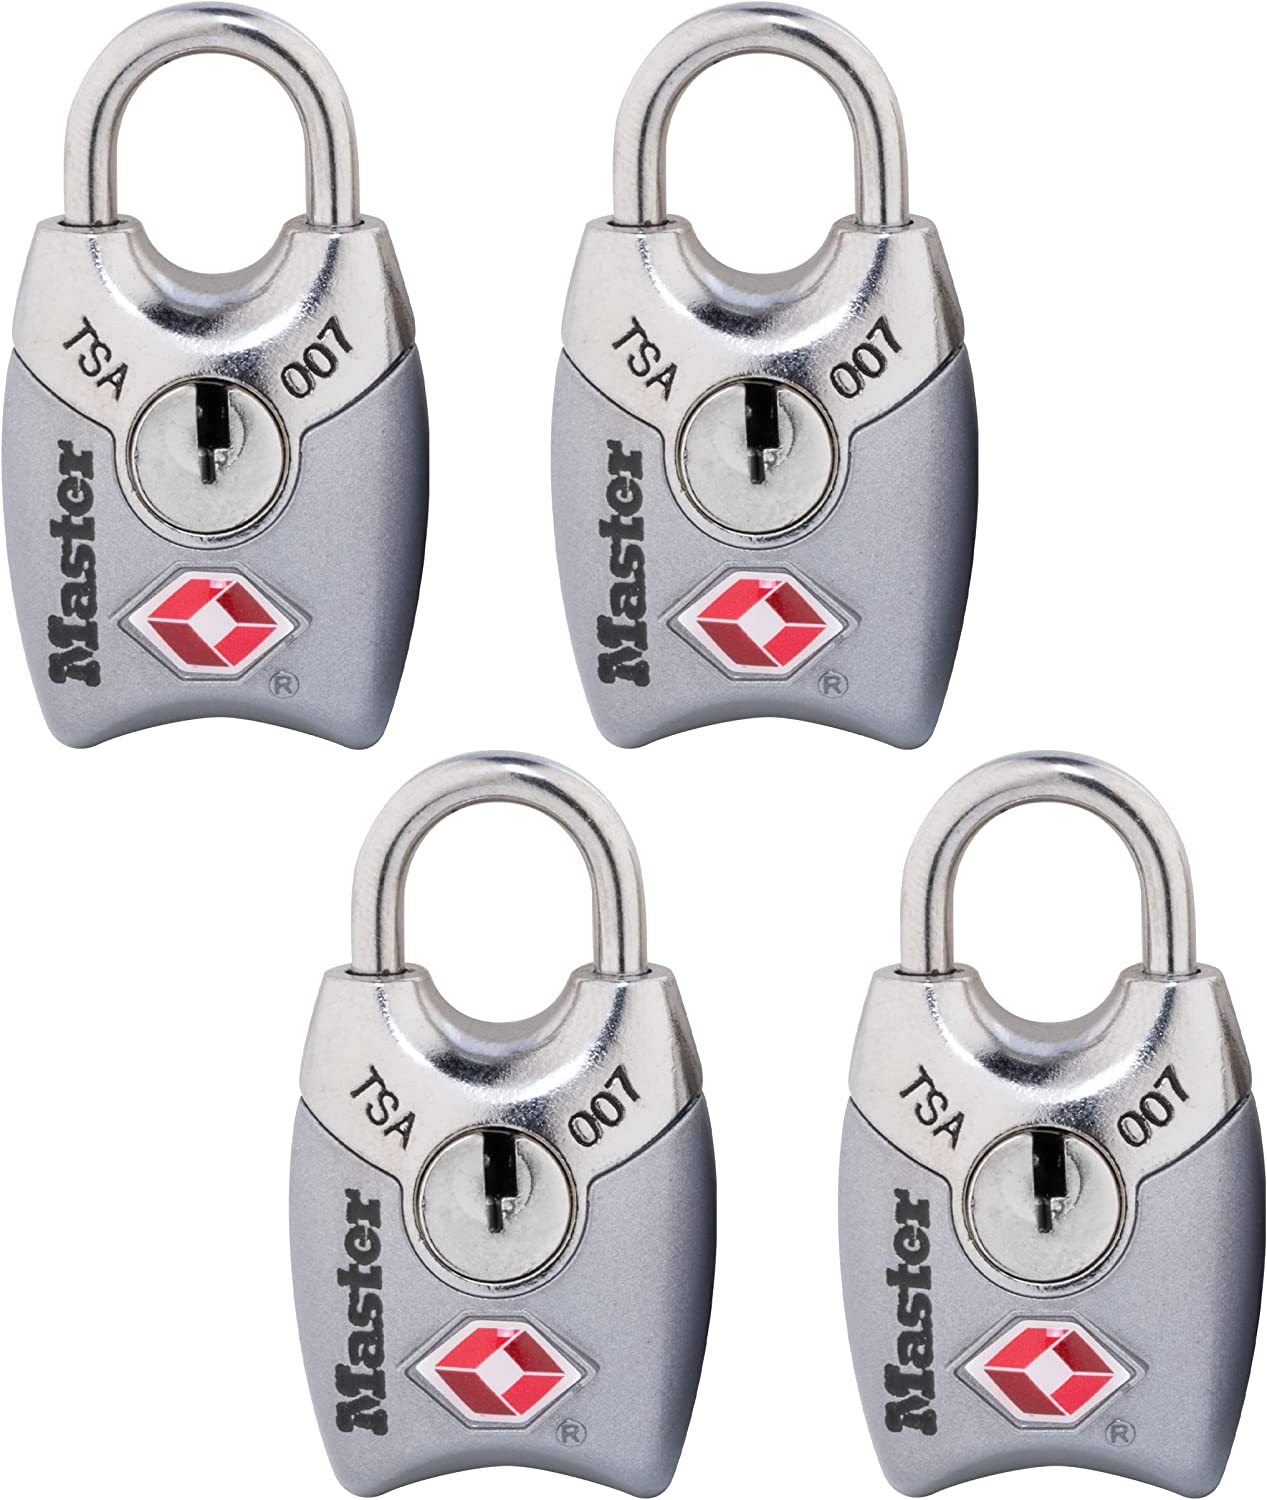 Master Lock Metal Keyed-Alike TSA Locks, 4-Pack